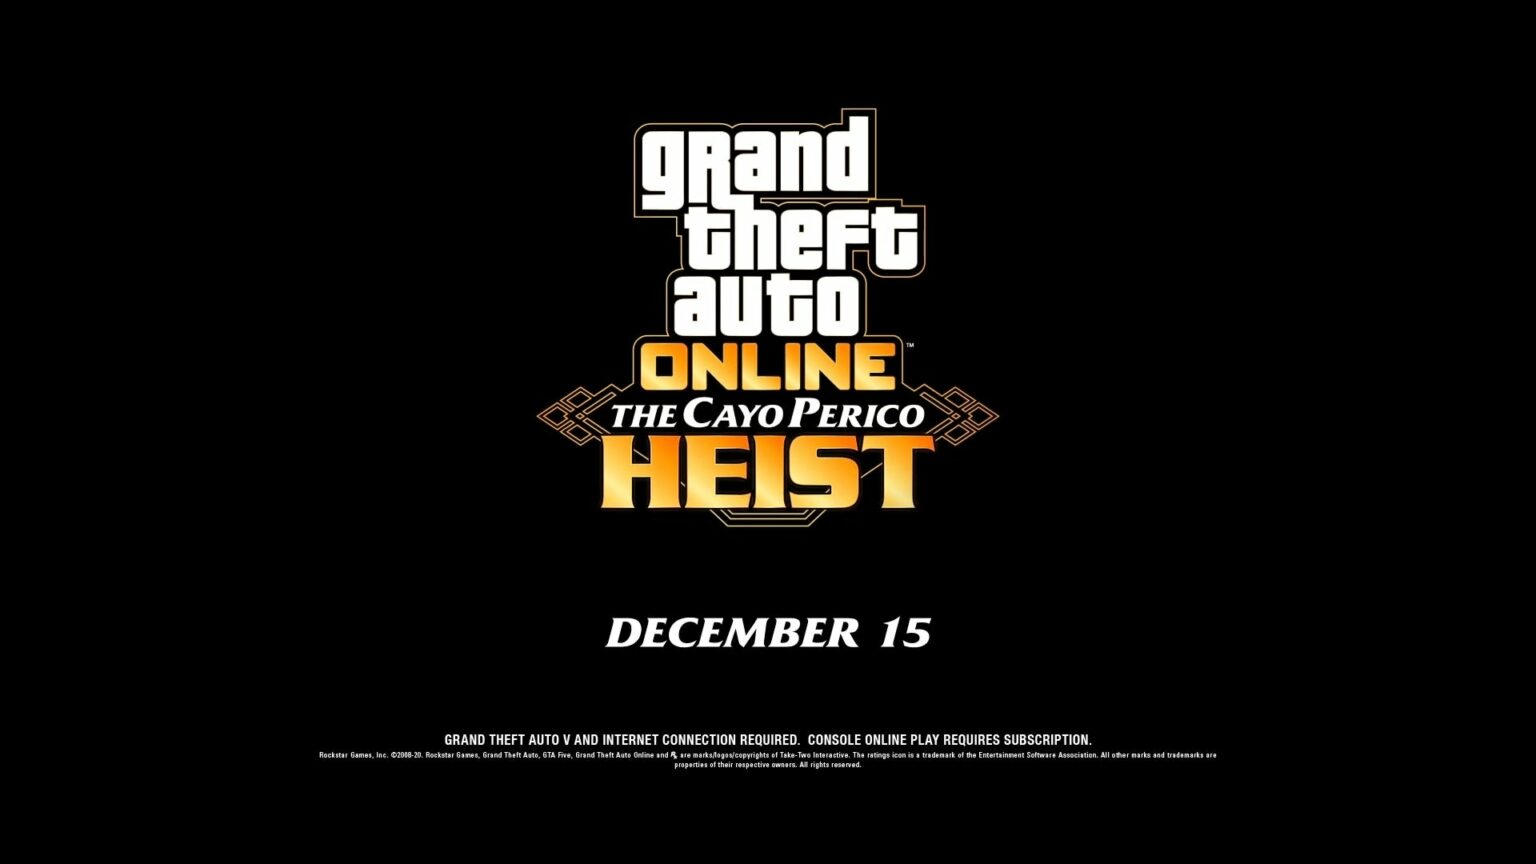 GTA V December 2020 DLC Announced: Cayo Perico Heist cover